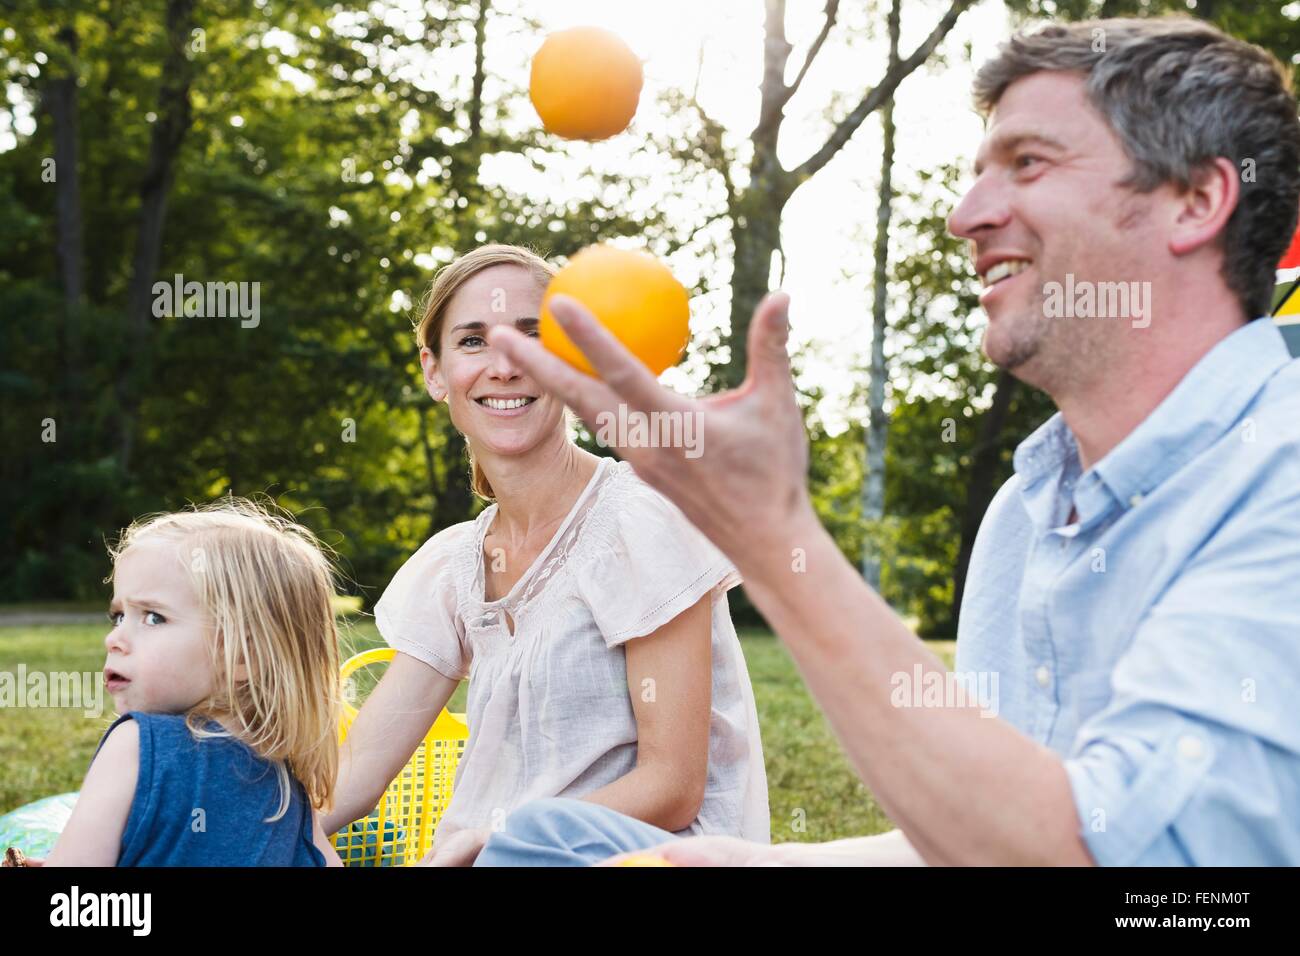 Hombre maduro malabarismos con naranjas al picnic familiar en el parque Foto de stock